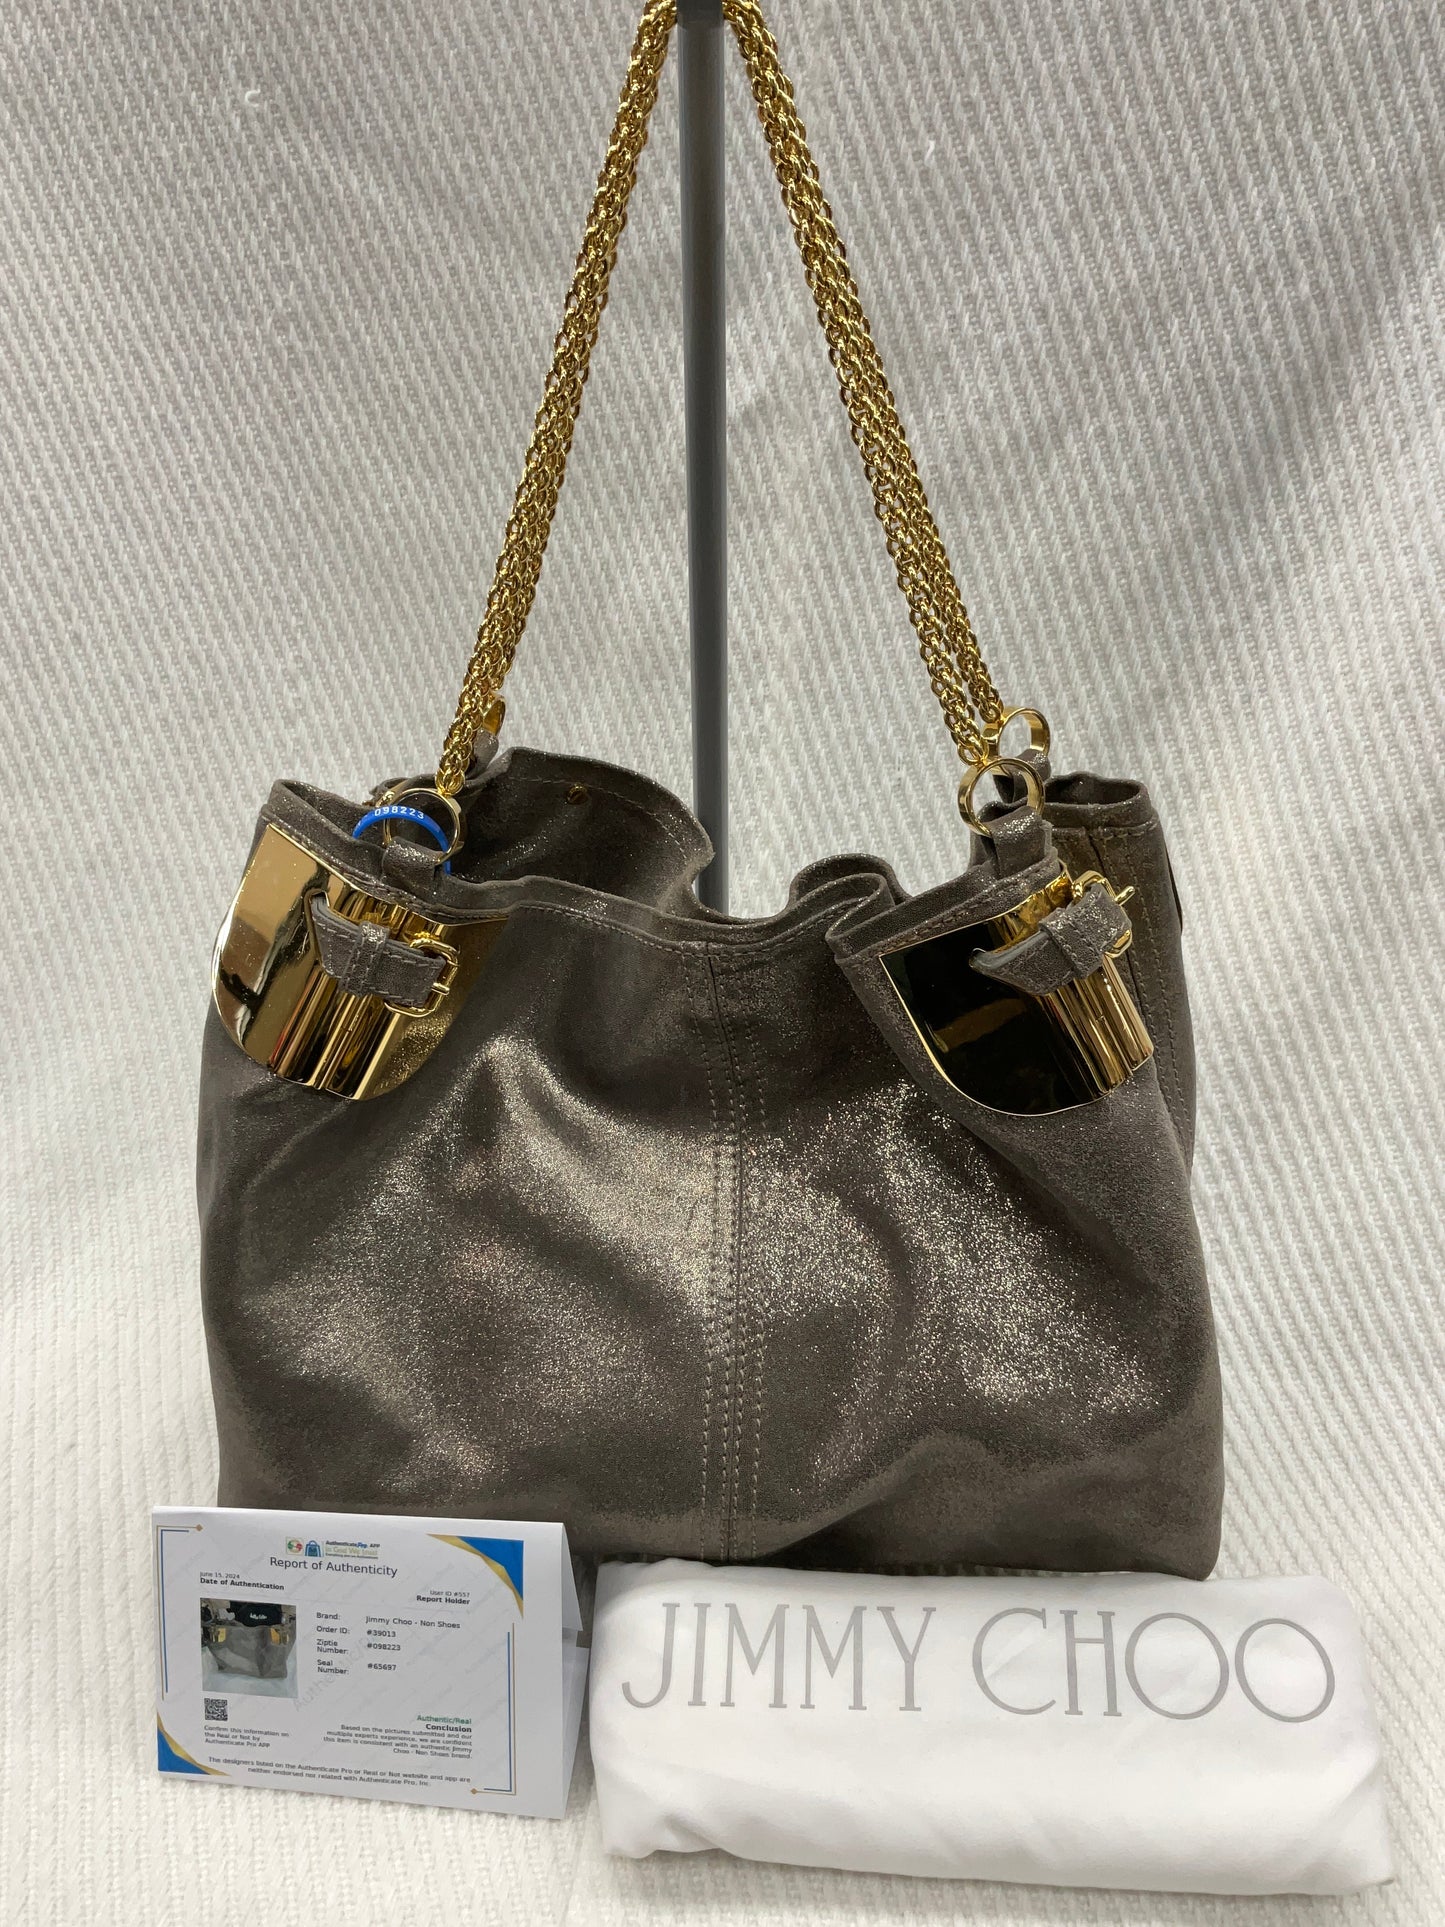 Handbag Luxury Designer Jimmy Choo, Size Large